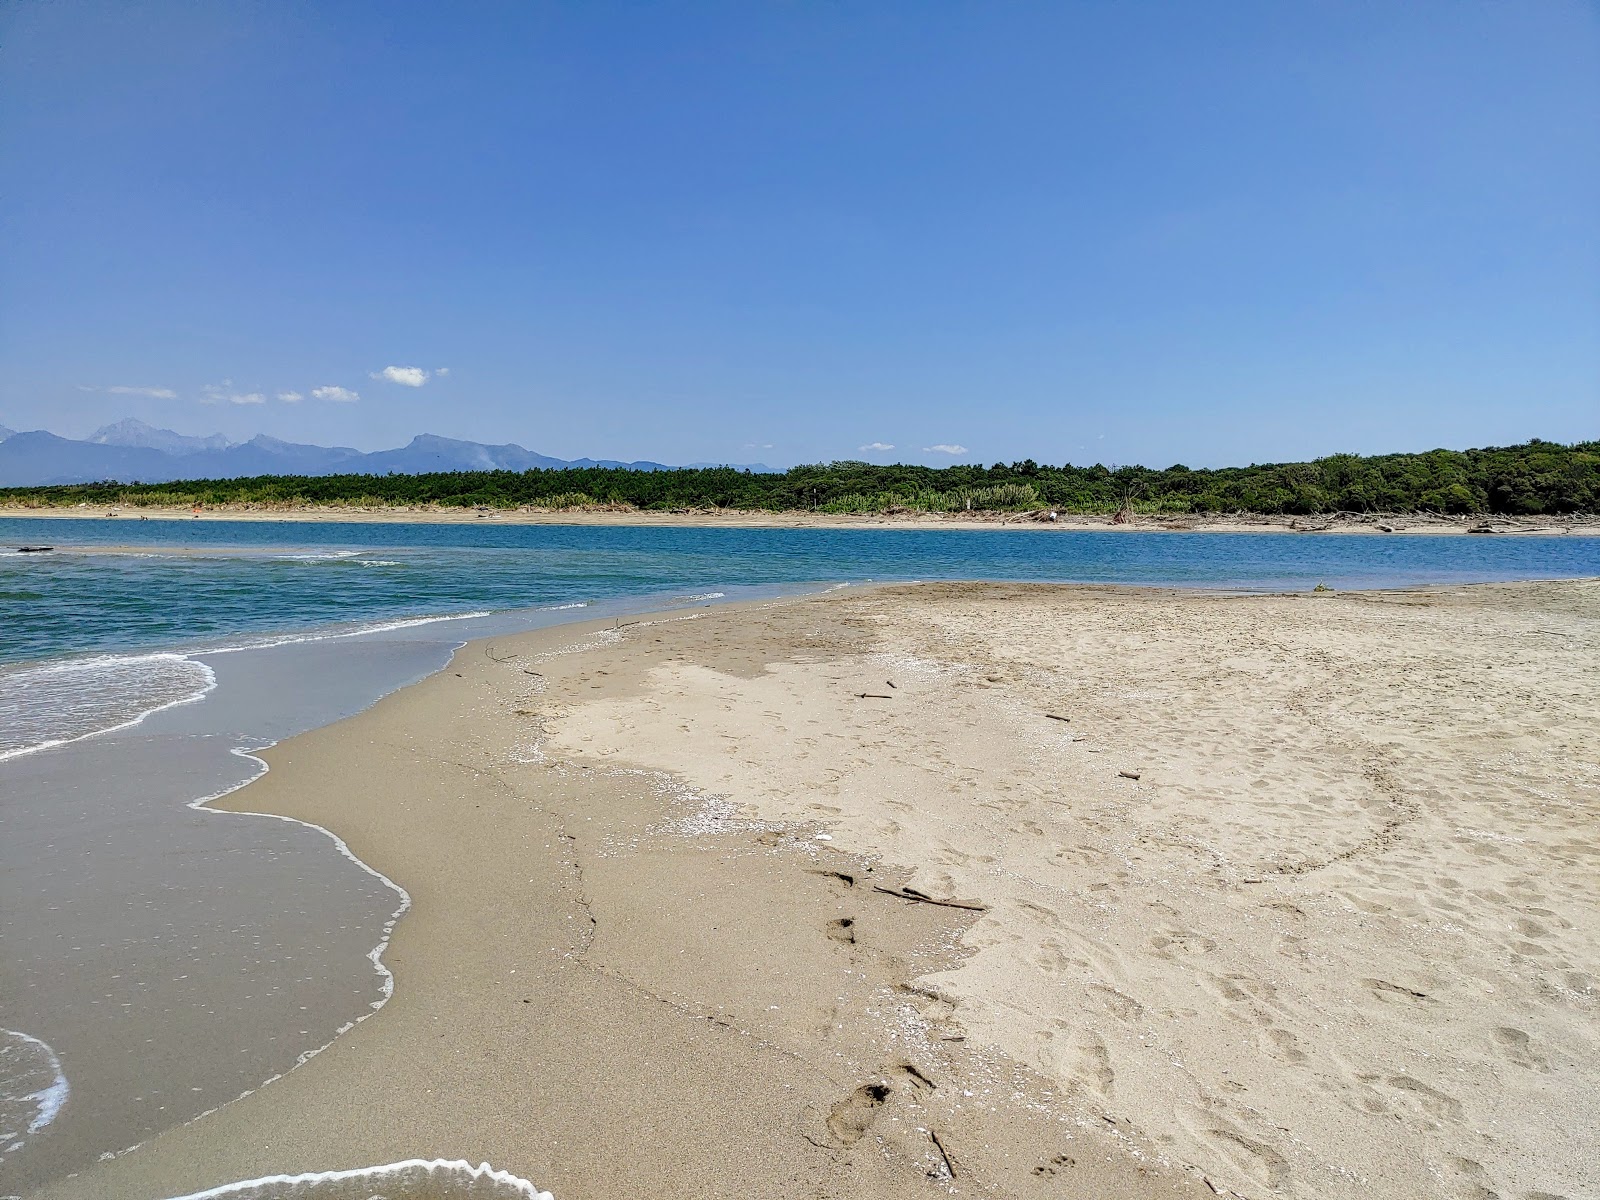 Foto di Serchio beach con una superficie del sabbia luminosa